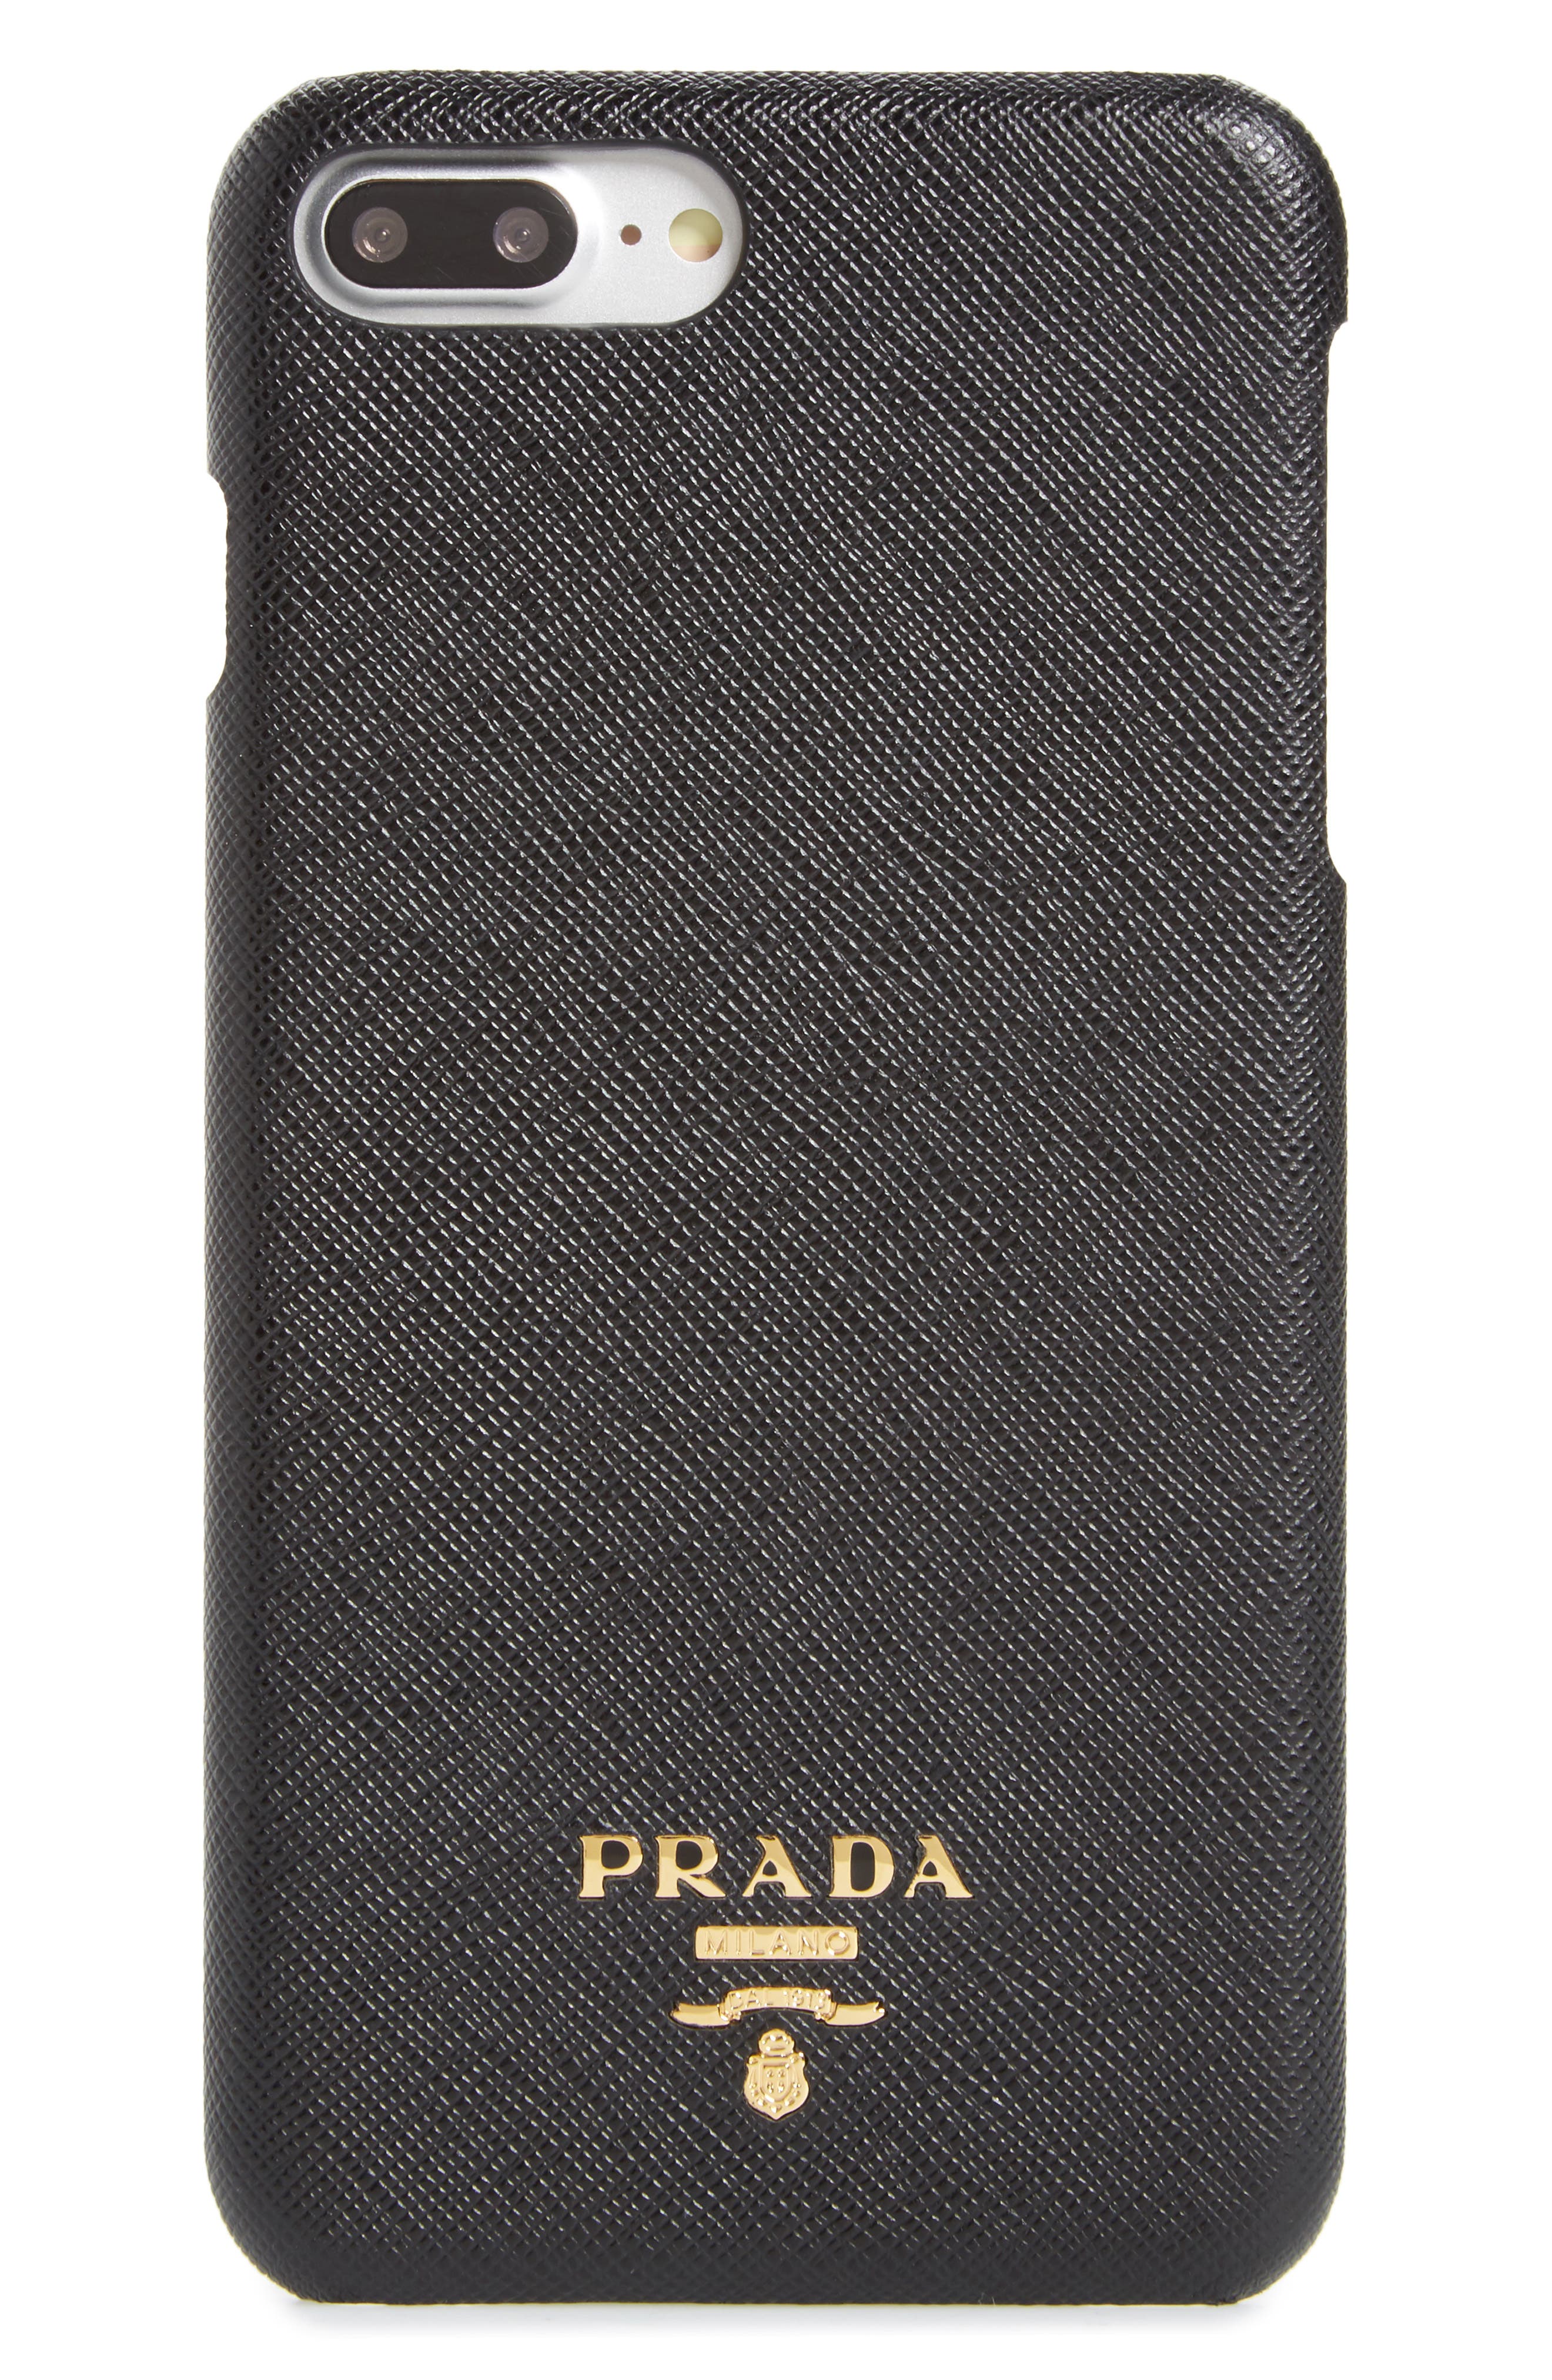 prada phone case